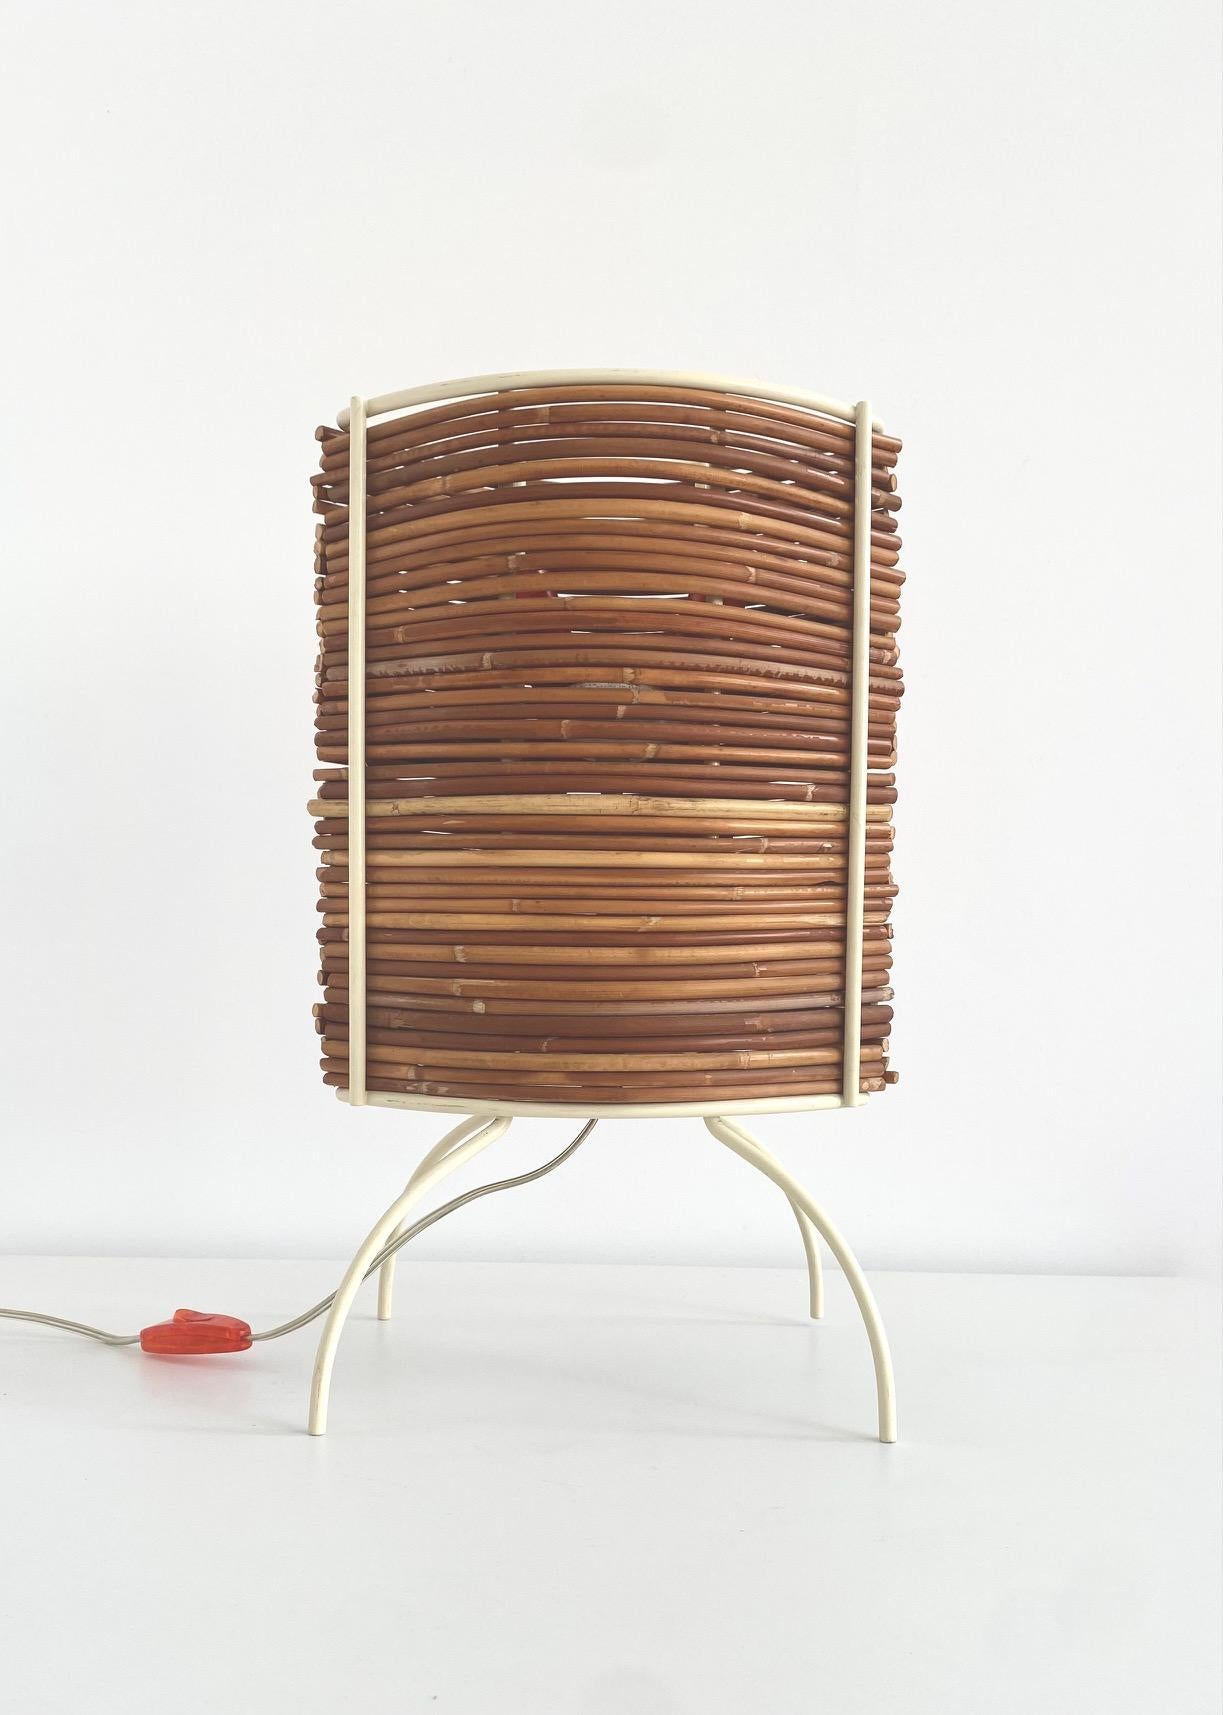 Lampenmodell Bambù Humberto (1953) & Fernando (1962) CAMPANA mit beige lackierter Metallstruktur, in die Bambusstäbe eingesetzt sind, die Streuschirme für die vier Lichtquellen bilden.
Ausgabe: Fontana Arte von 2000 bis 2005
Maße: H 45 cm, B 28 cm,